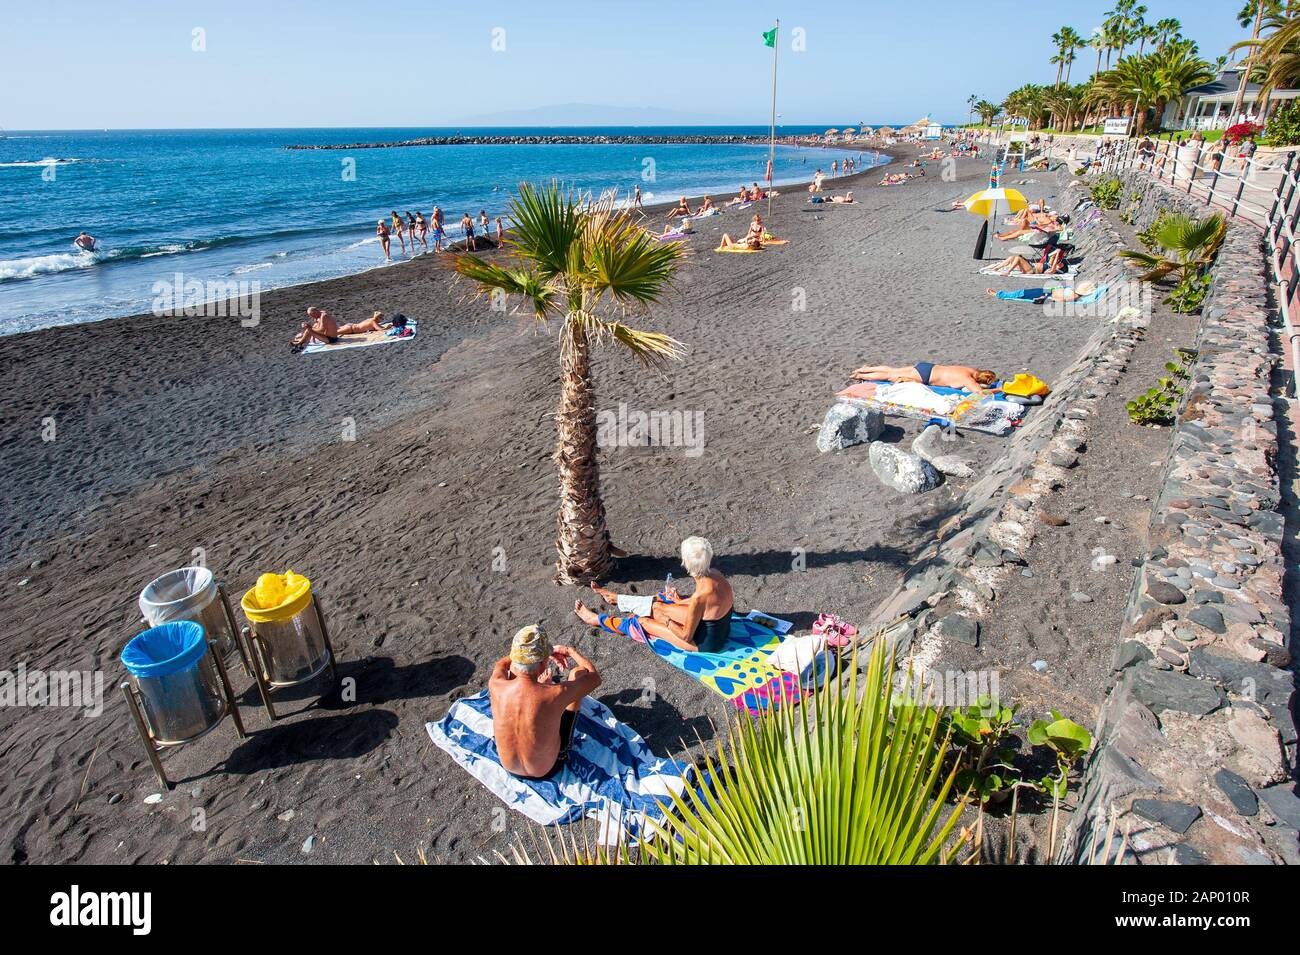 Île des Canaries Tenerife, Espagne - 27 déc, 2019 : les touristes sont de détente et de jouer sur une plage appelée Playa El Beril sur Ténérife. Une plage de gravier noir. Banque D'Images